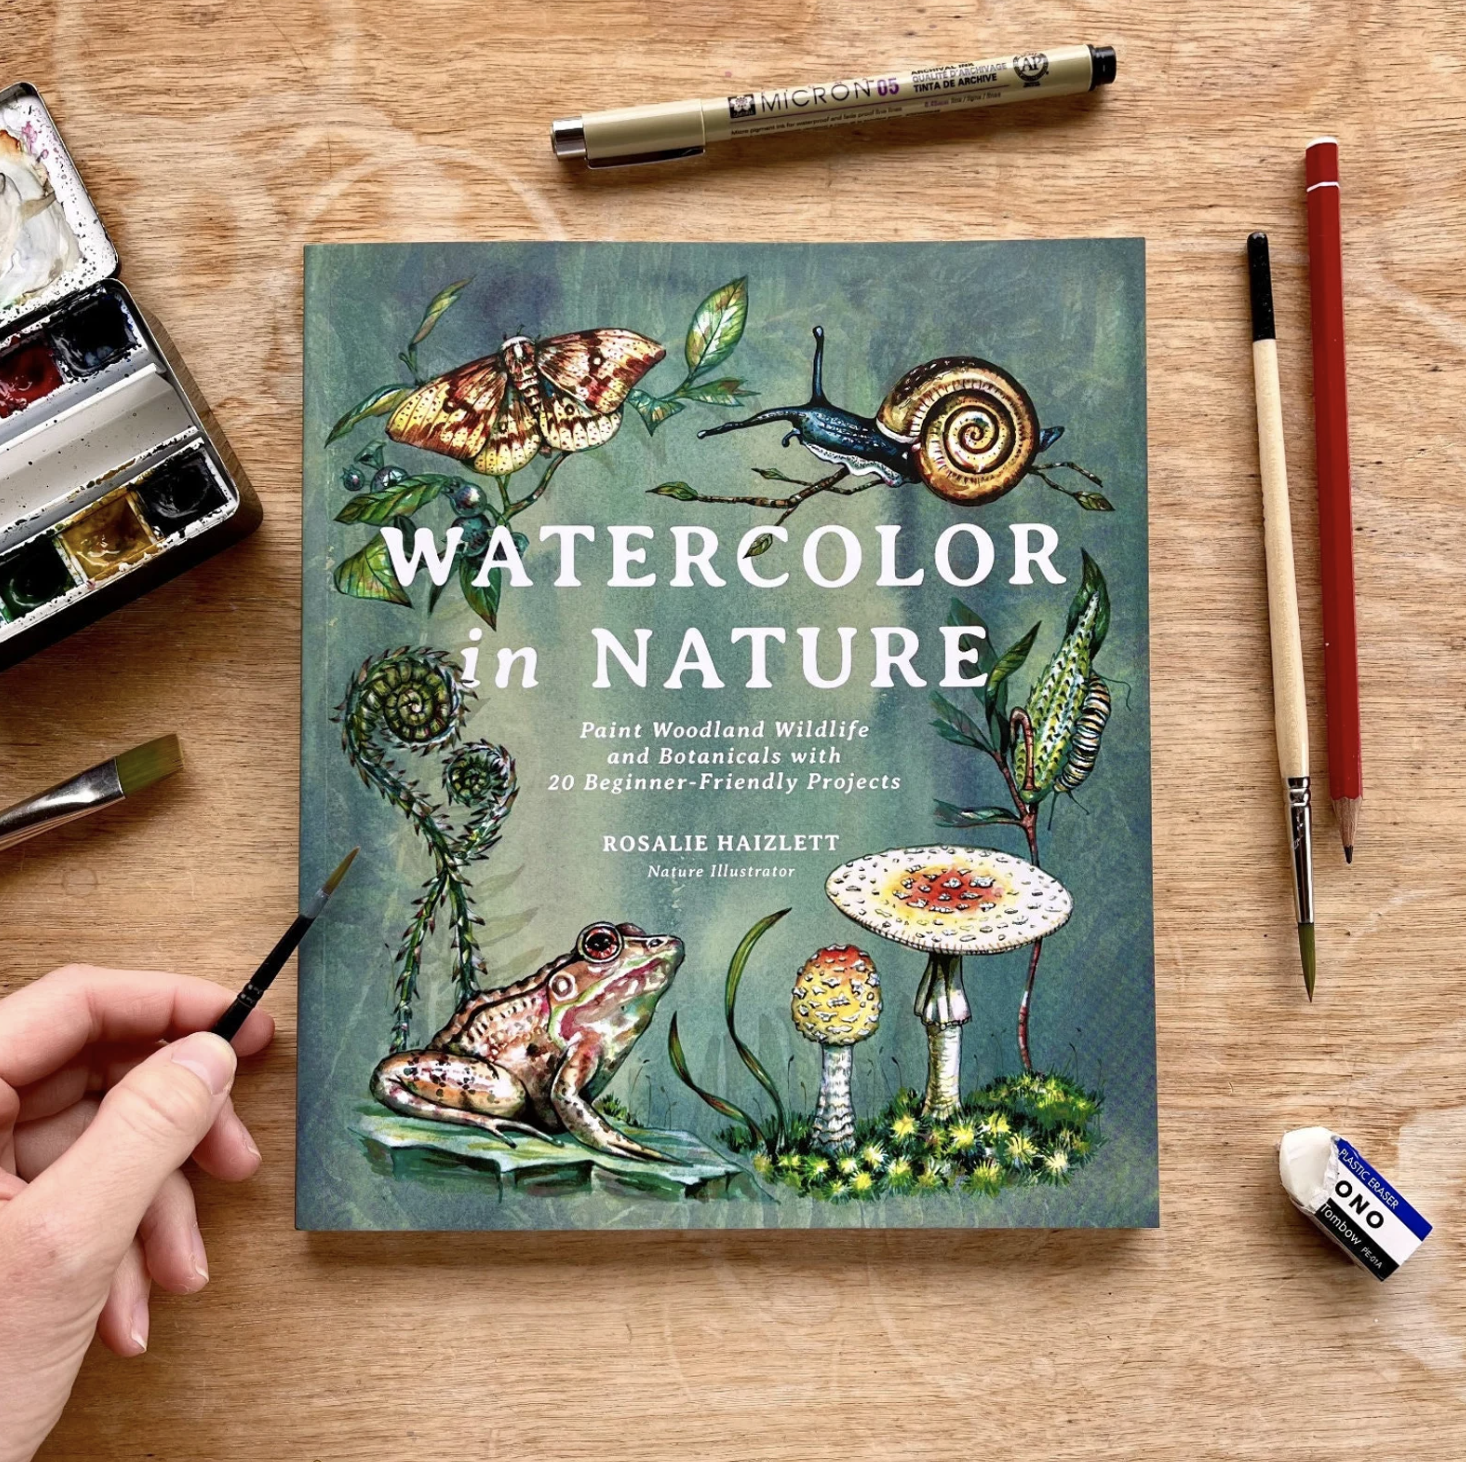 Huckleberry Waterproof Sketchbook – nature+nurture